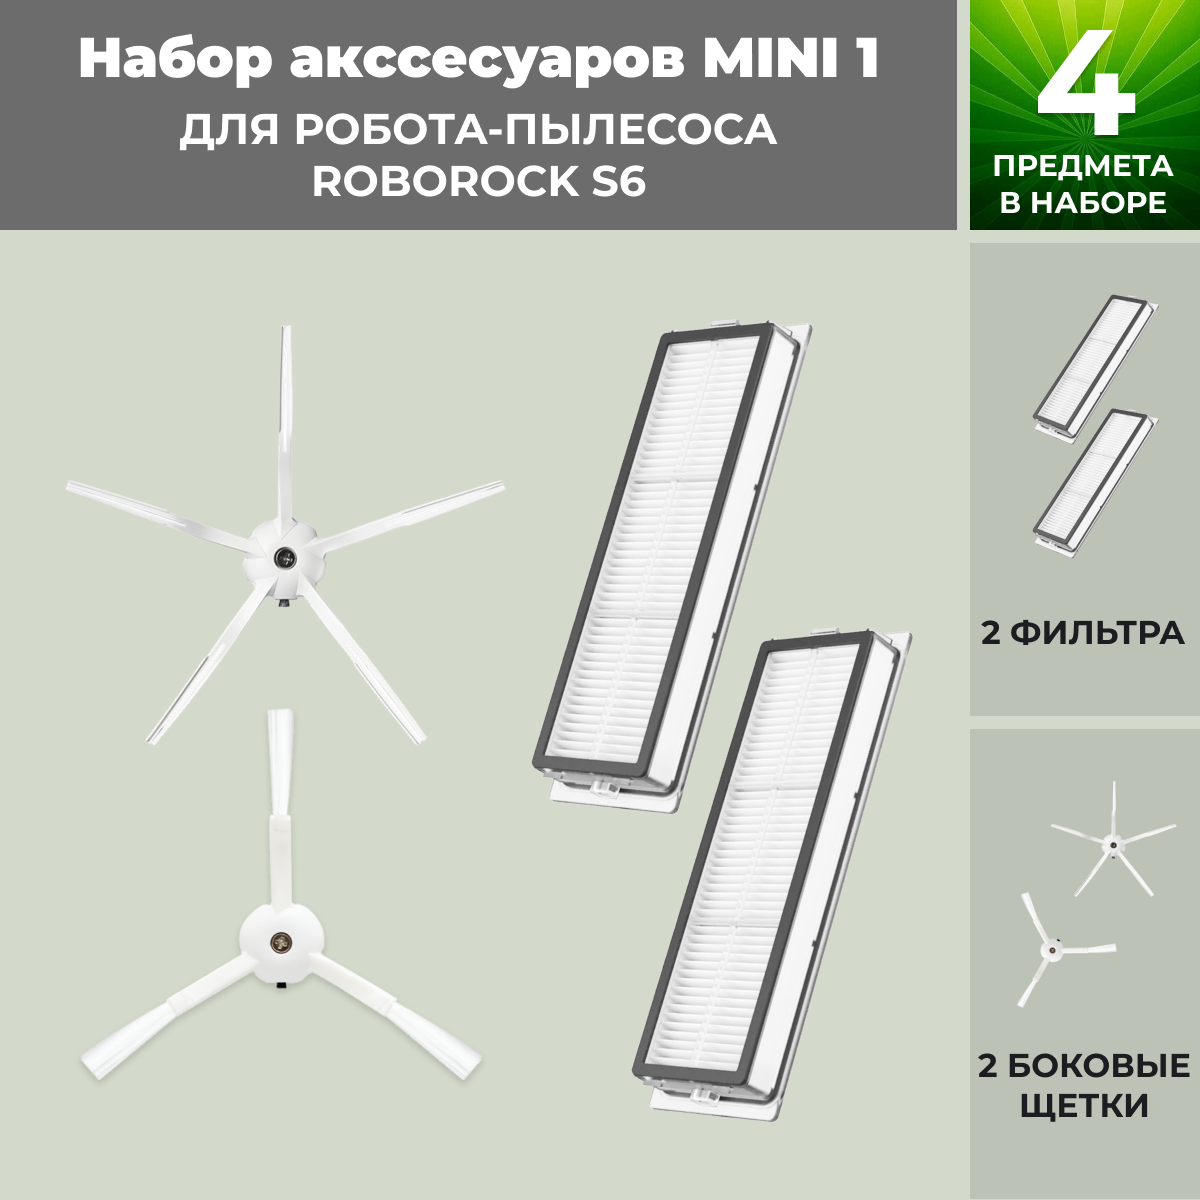 Набор аксессуаров Mini 1 для робота-пылесоса Roborock S6, белые боковые щетки 558344, фото 1